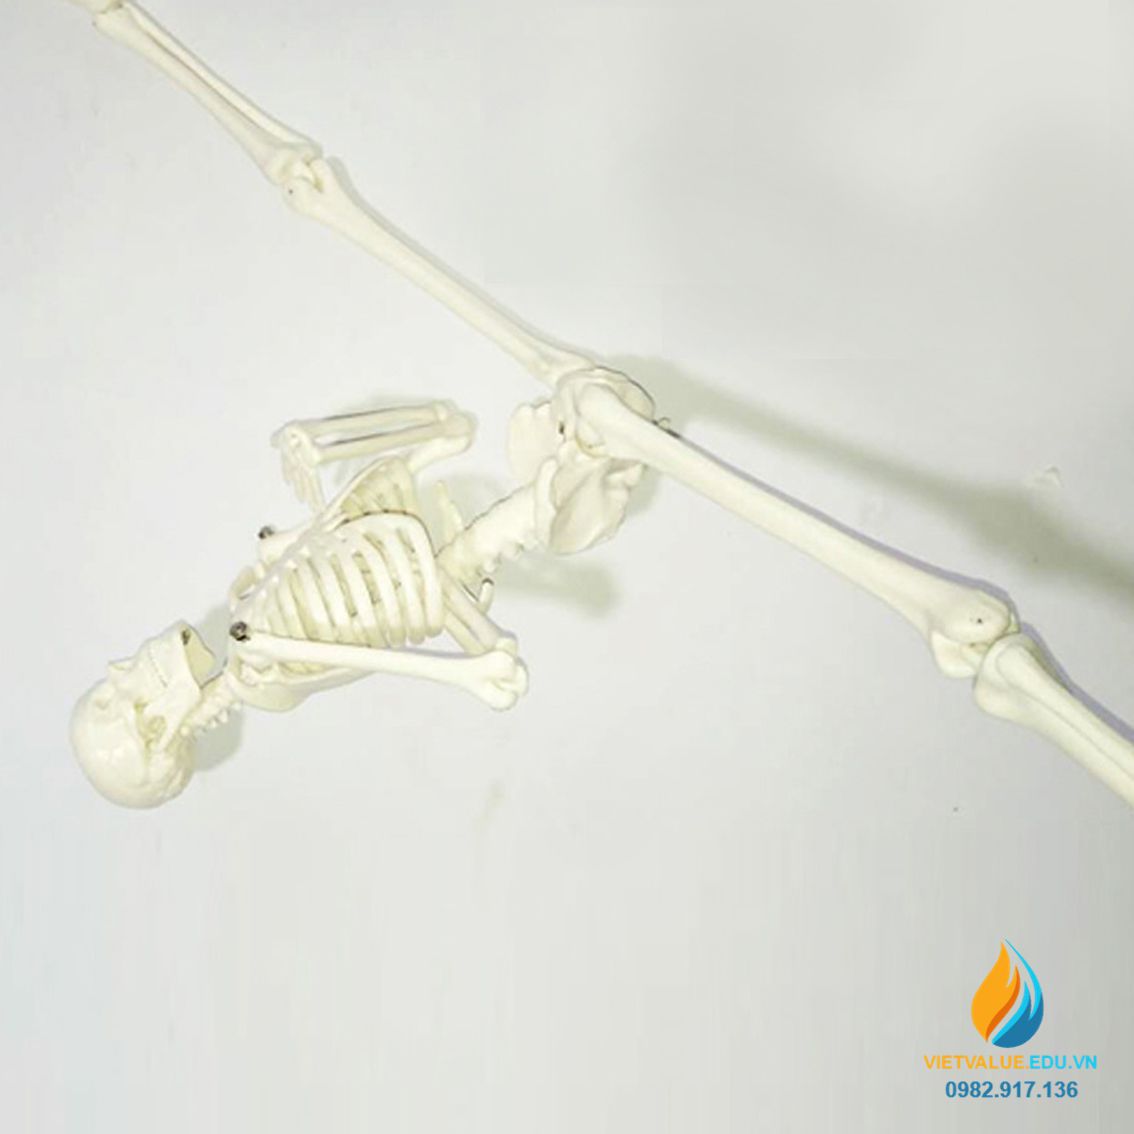 Mô hình bộ xương người, cao 45cm, chất liệu nhựa PVC, mô hình ...